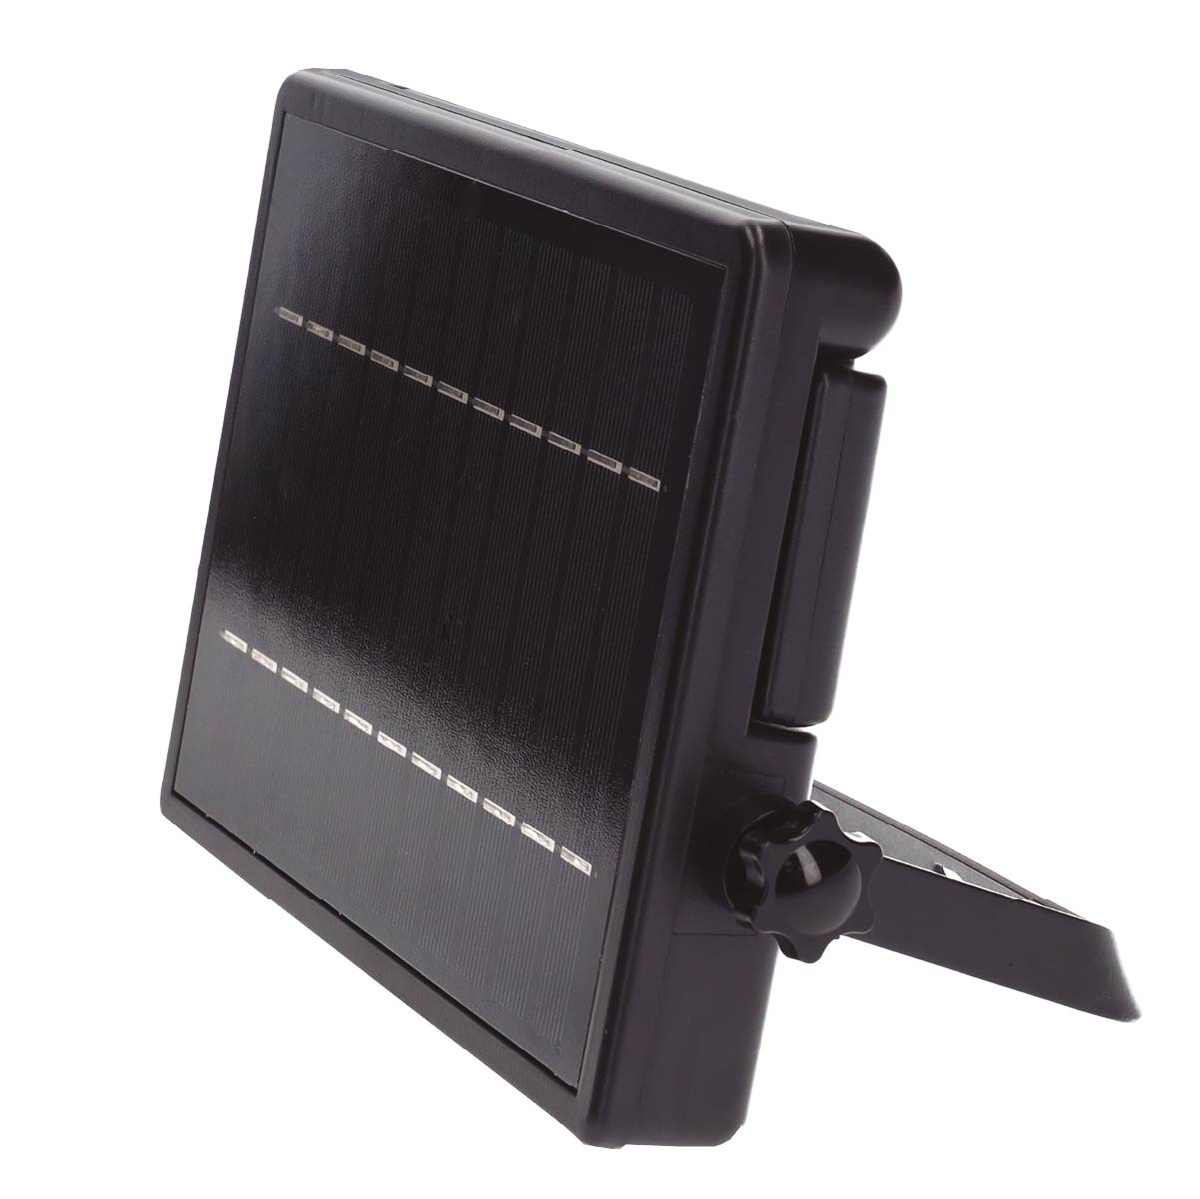 Foco proyector solar LED Cela con sensor de movimiento y crepuscular 6W 3000 - 4000 - 6000K IP54 Negro